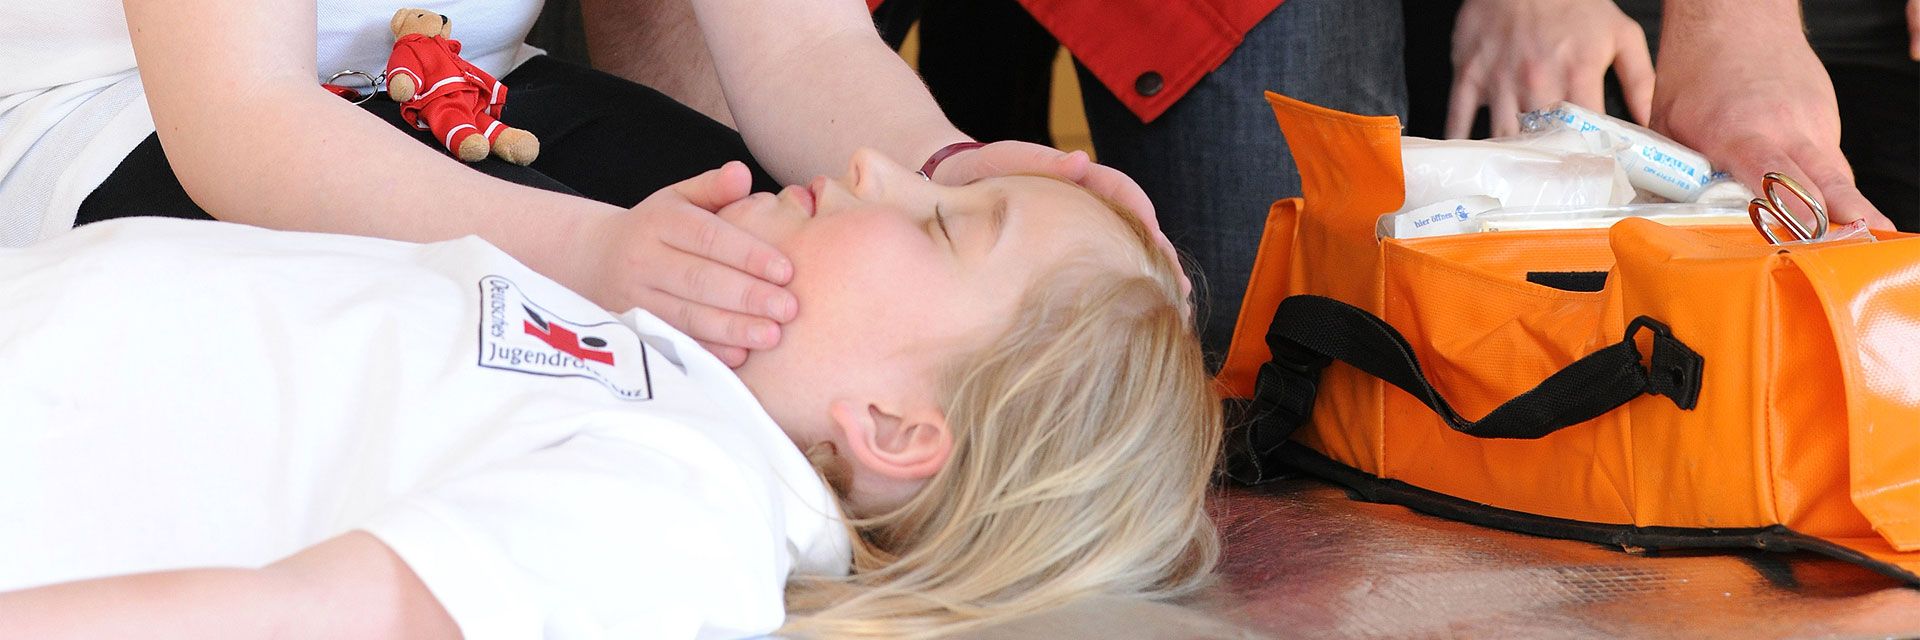 Foto: Bei einer Erste-Hilfe-Übung liegt ein Kind bewusstlos am Boden. Ein anderes Kind überprüft gerade die Atmung. Am Rande des Fotos ist eine Tasche mit Verbandsmaterial zu sehen.